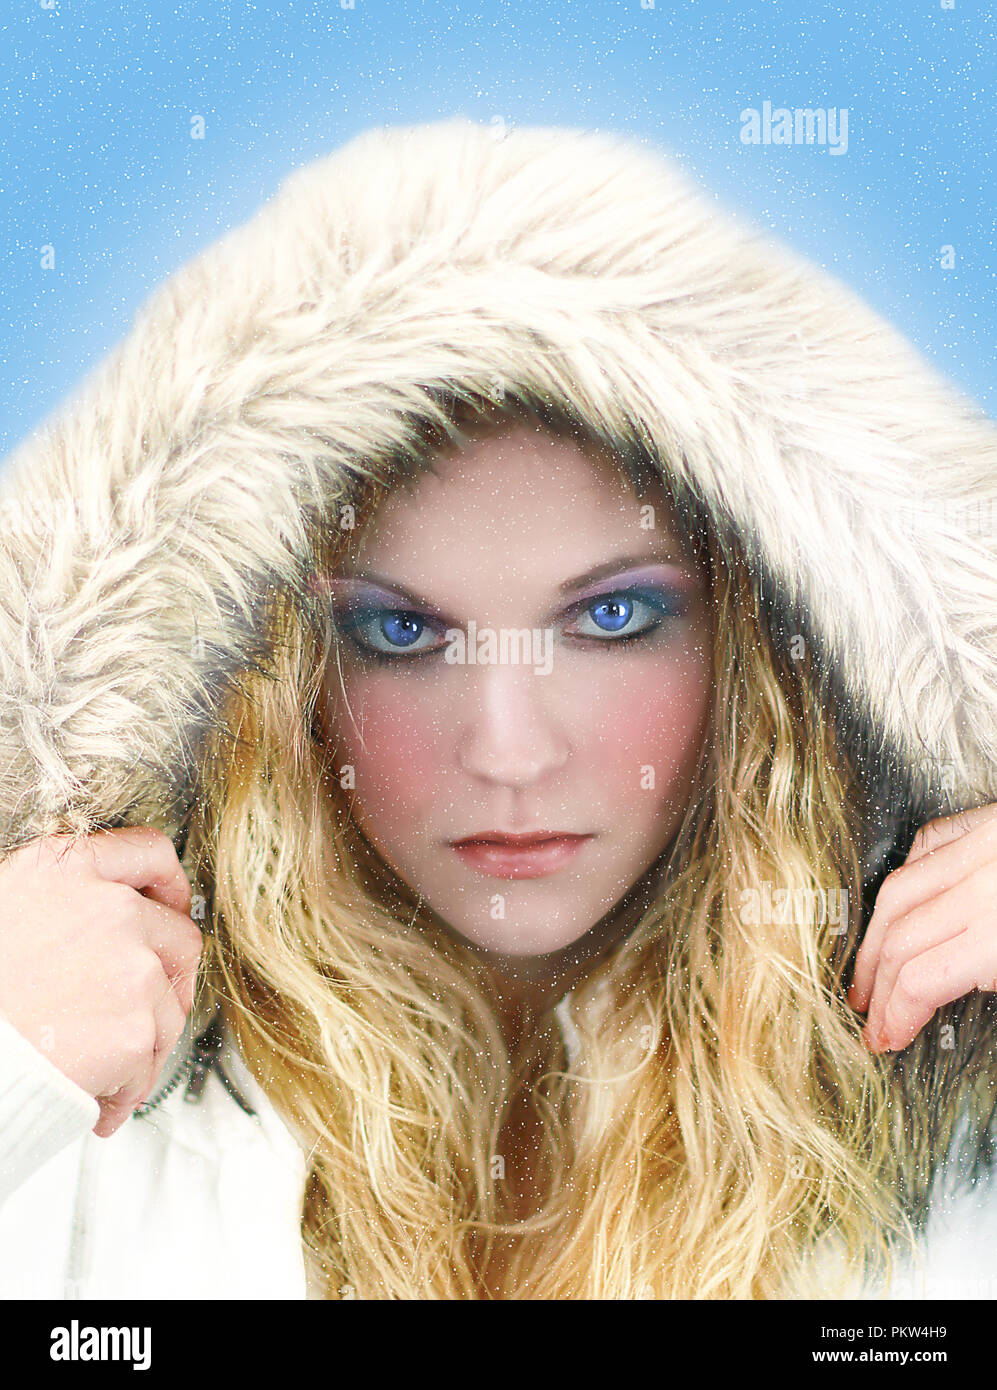 Belle image de la reine de glace woman wearing white parka avec capuche et yeux bleus perçants. Banque D'Images